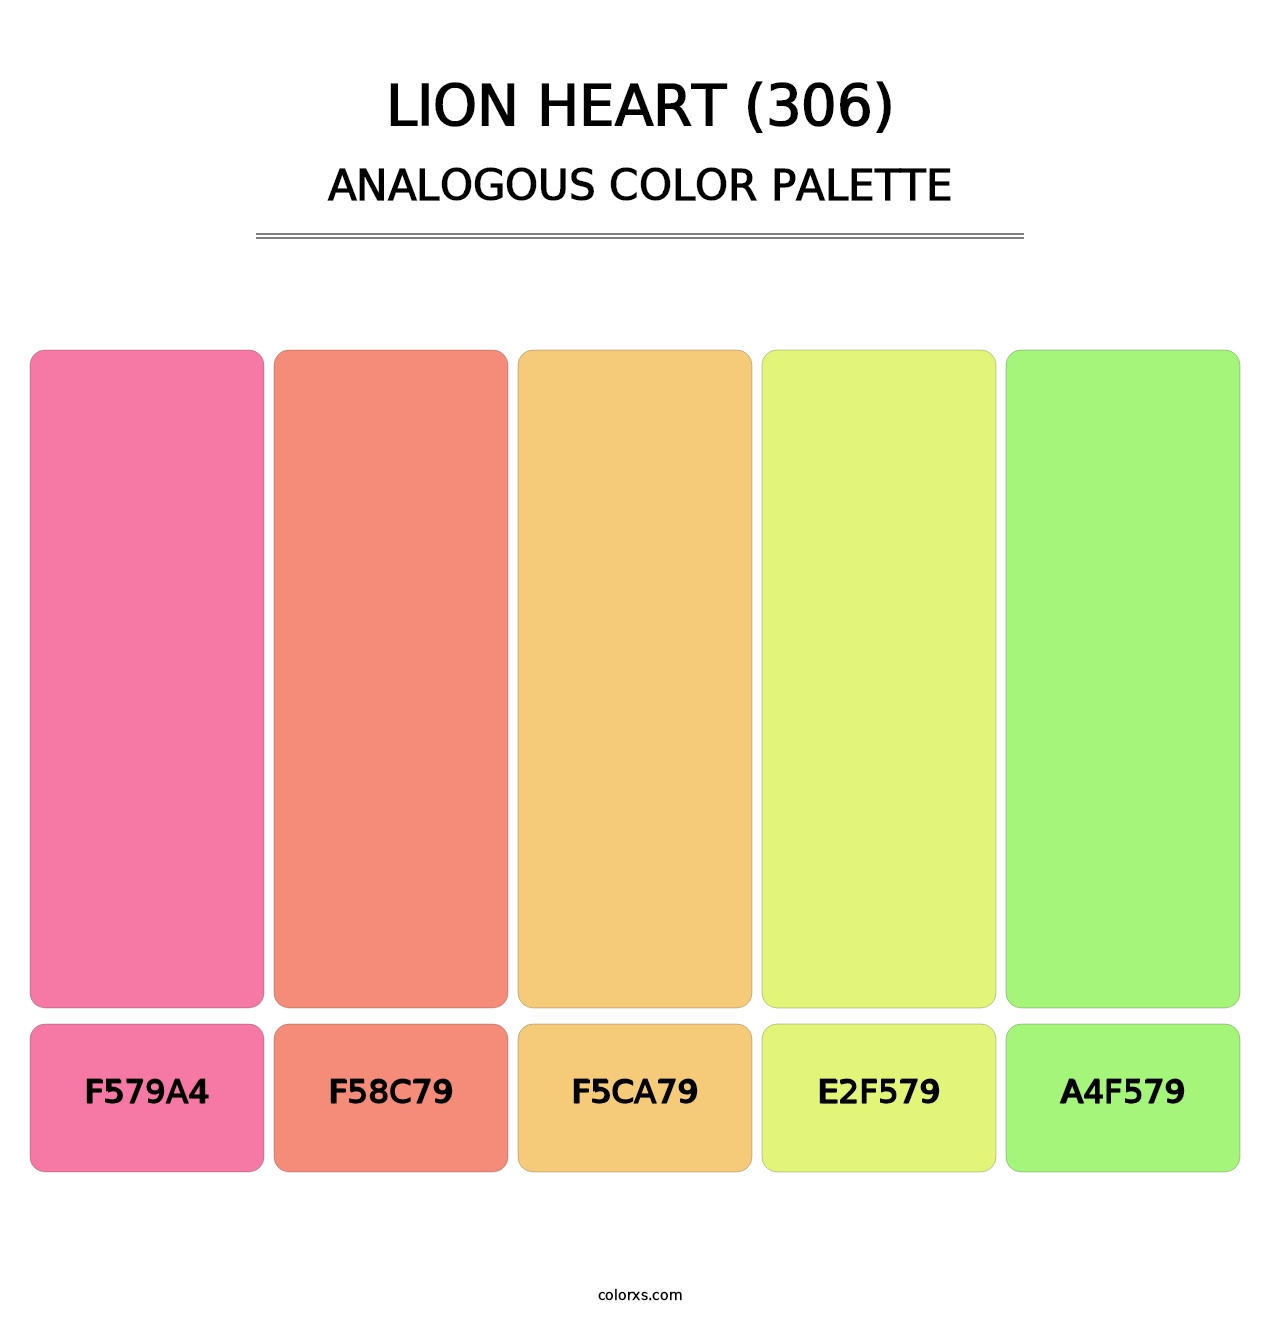 Lion Heart (306) - Analogous Color Palette